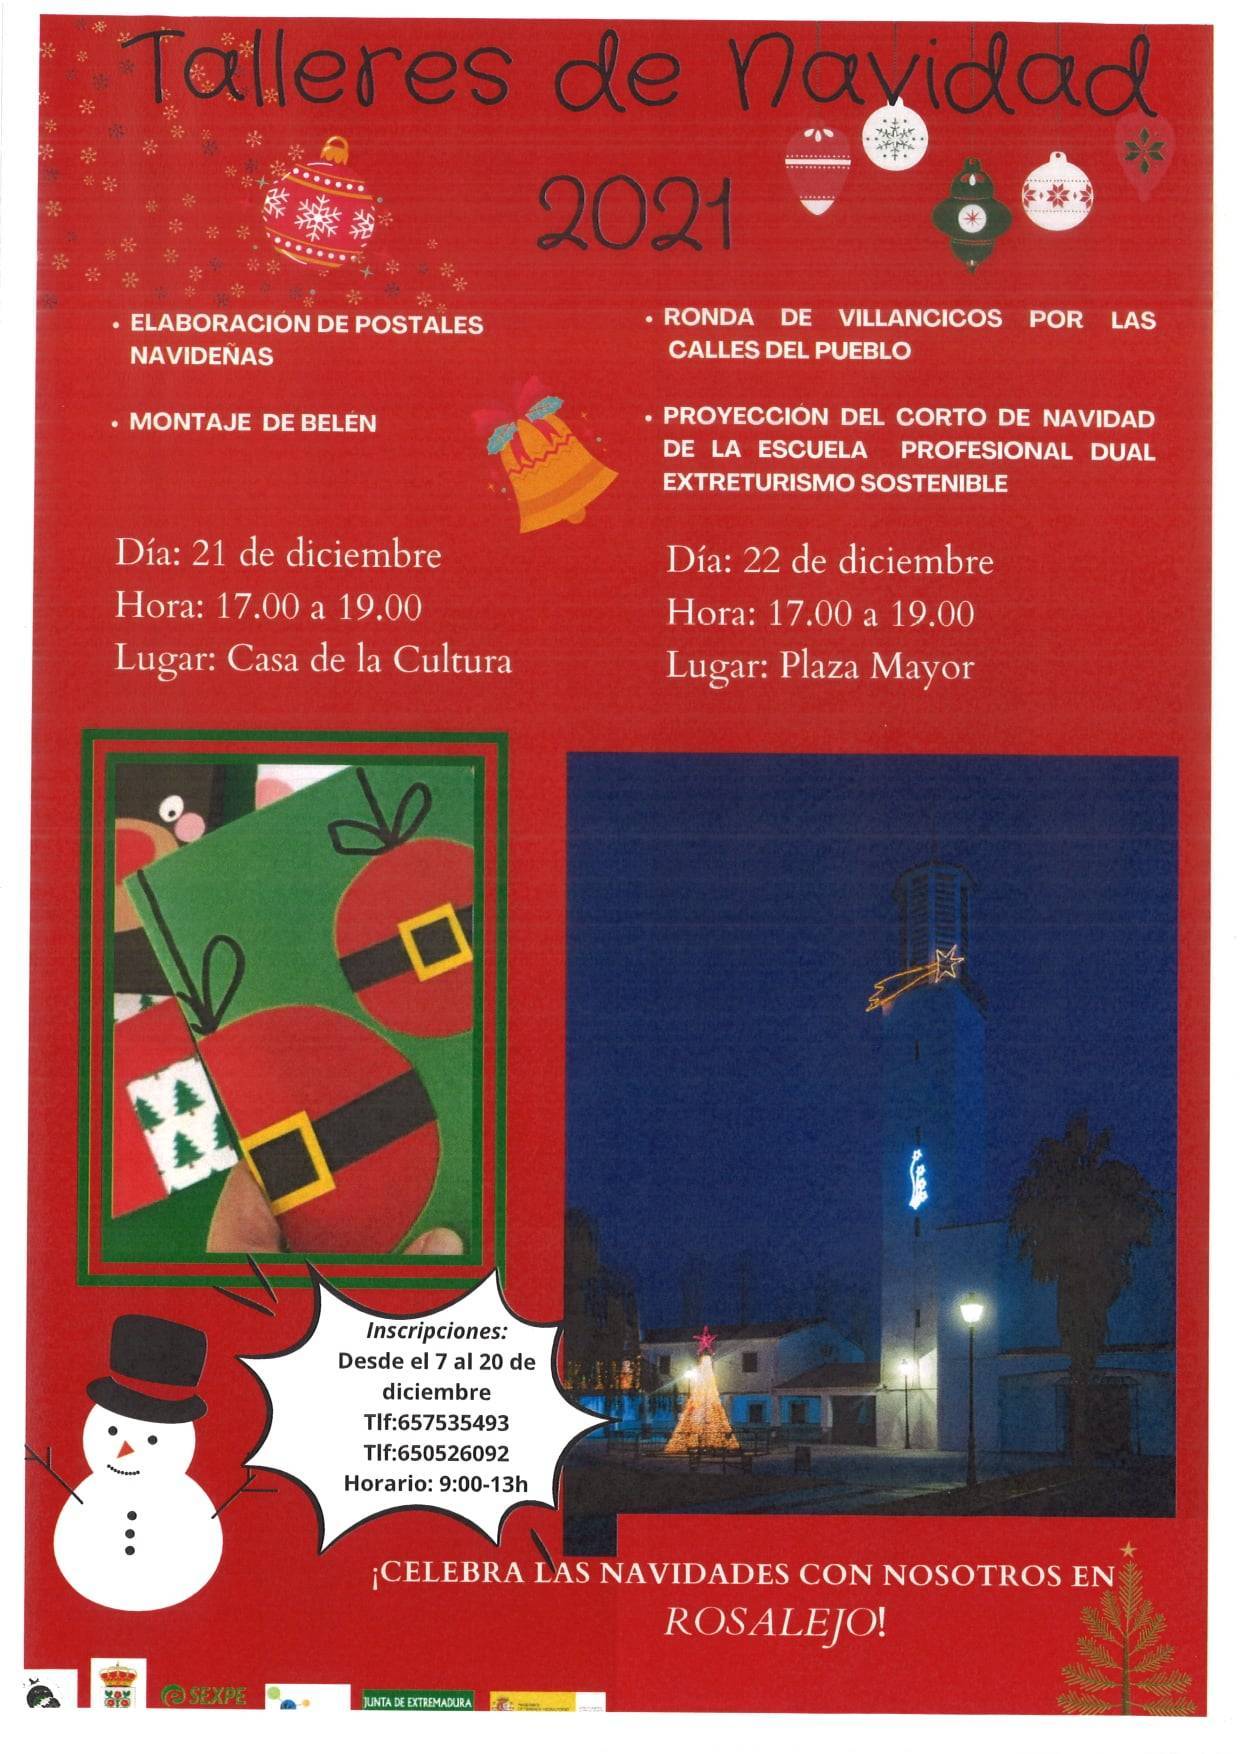 Talleres de Navidad (2021) - Rosalejo (Cáceres)